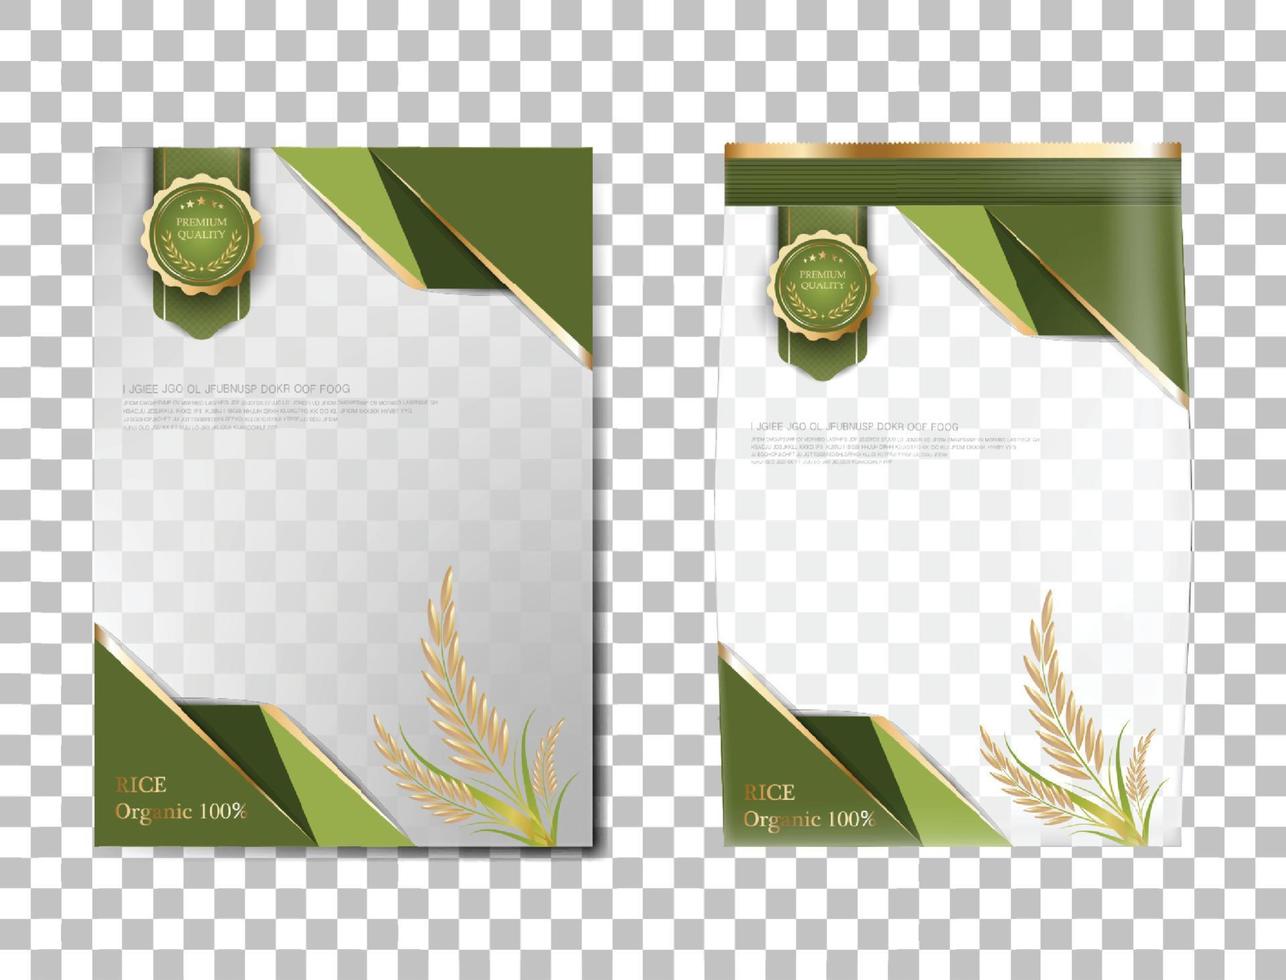 rijst pakket thailand voedingsproducten, groene gouden banner en poster sjabloon vector ontwerp rijst.